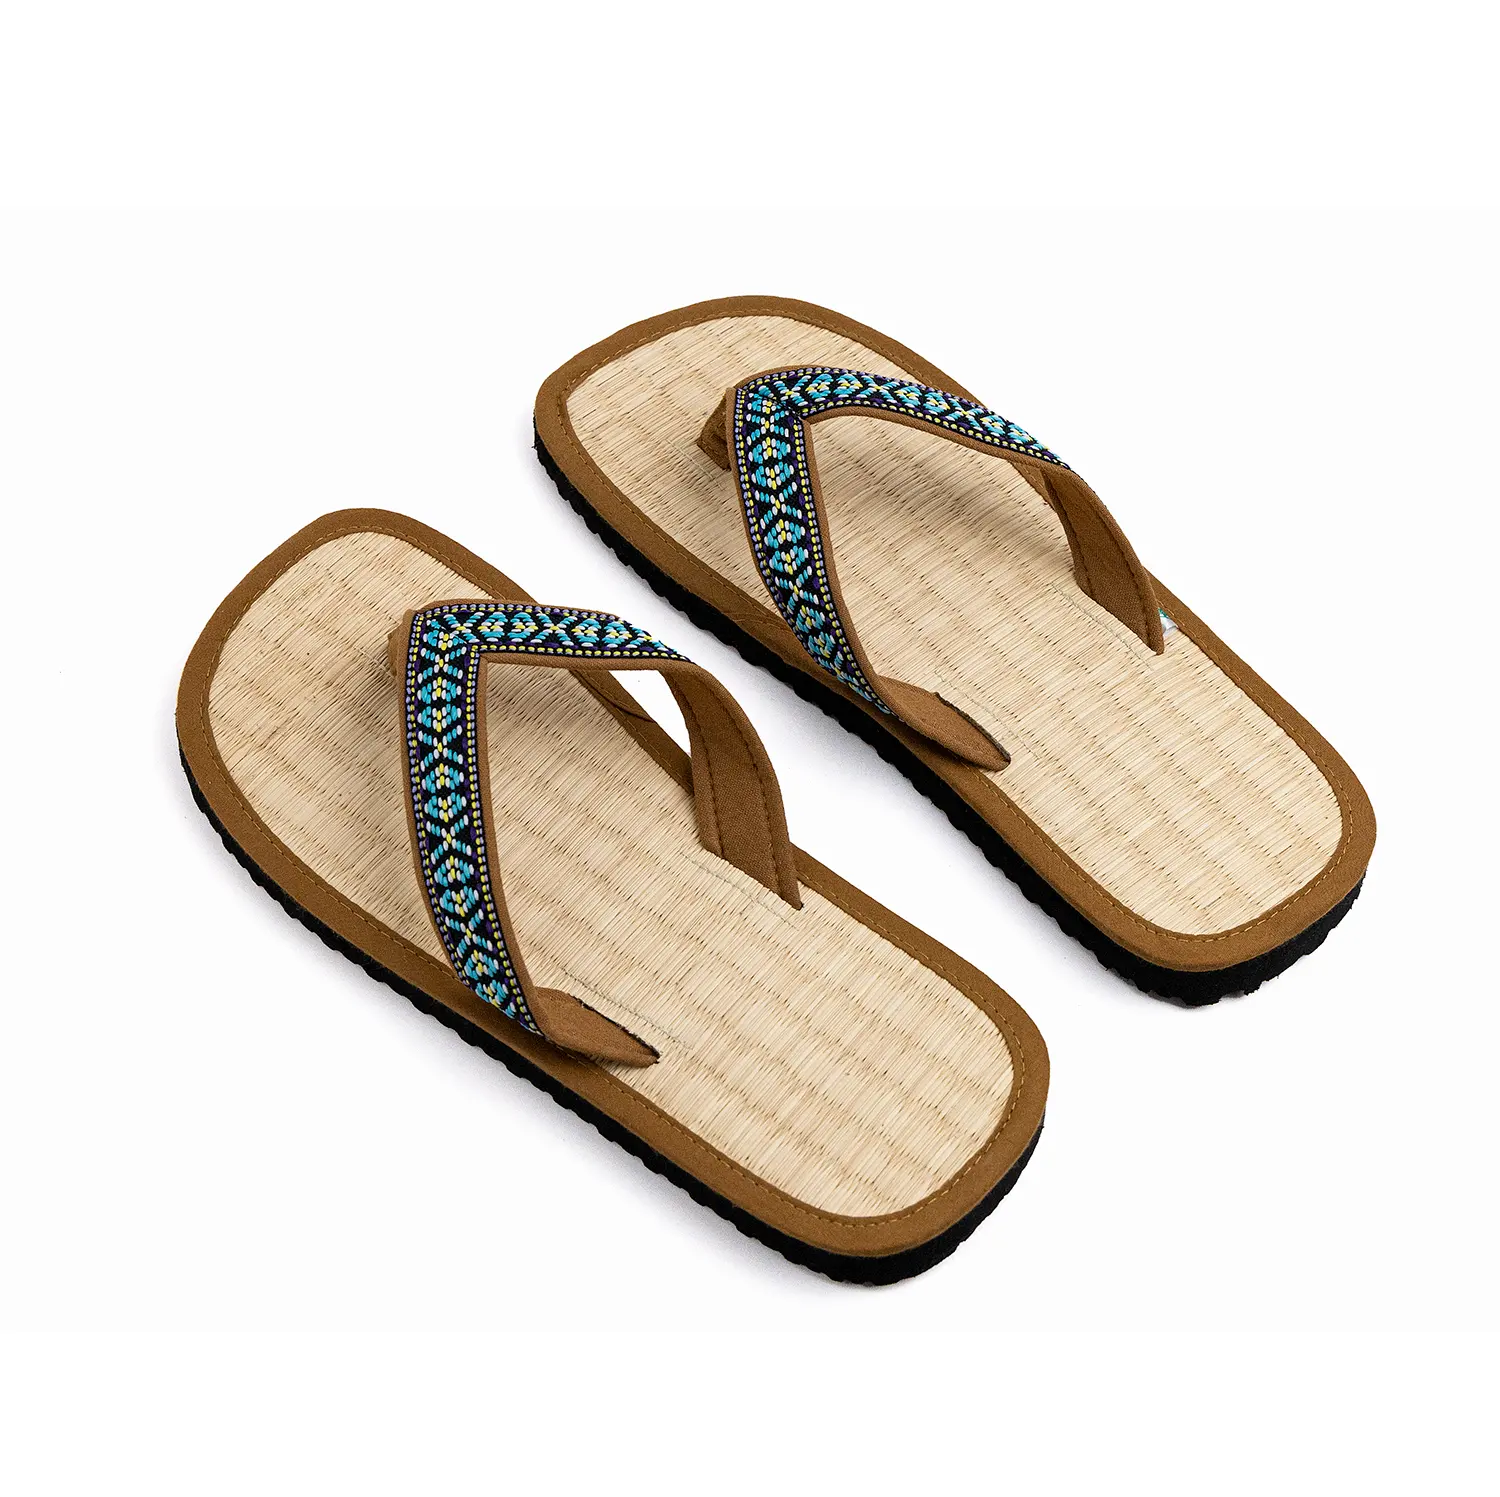 Sandalias hechas a mano para la belleza de la canela, sandalias resistentes para viajes, ayuda para la playa para masajear los pies, debe comprar 100%